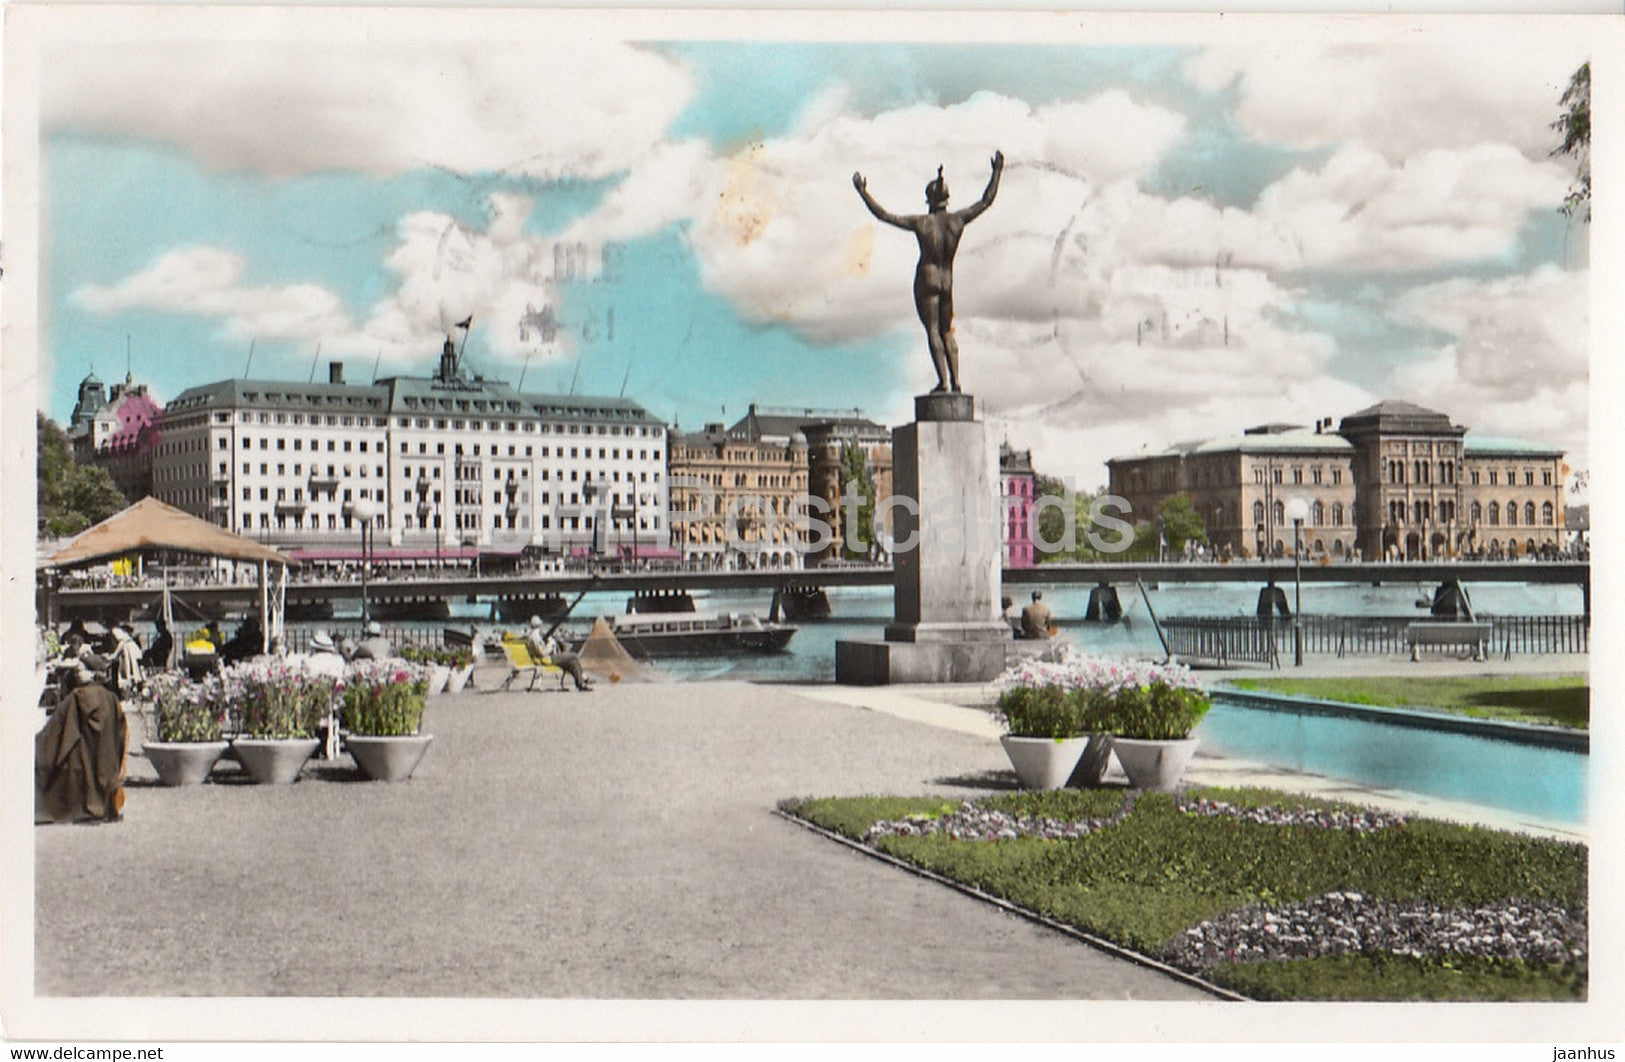 Stockholm - Stromparterren med Grand Hotel och Nationalmuseum i bakgrunden - museum old postcard - 1954 - Sweden - used - JH Postcards